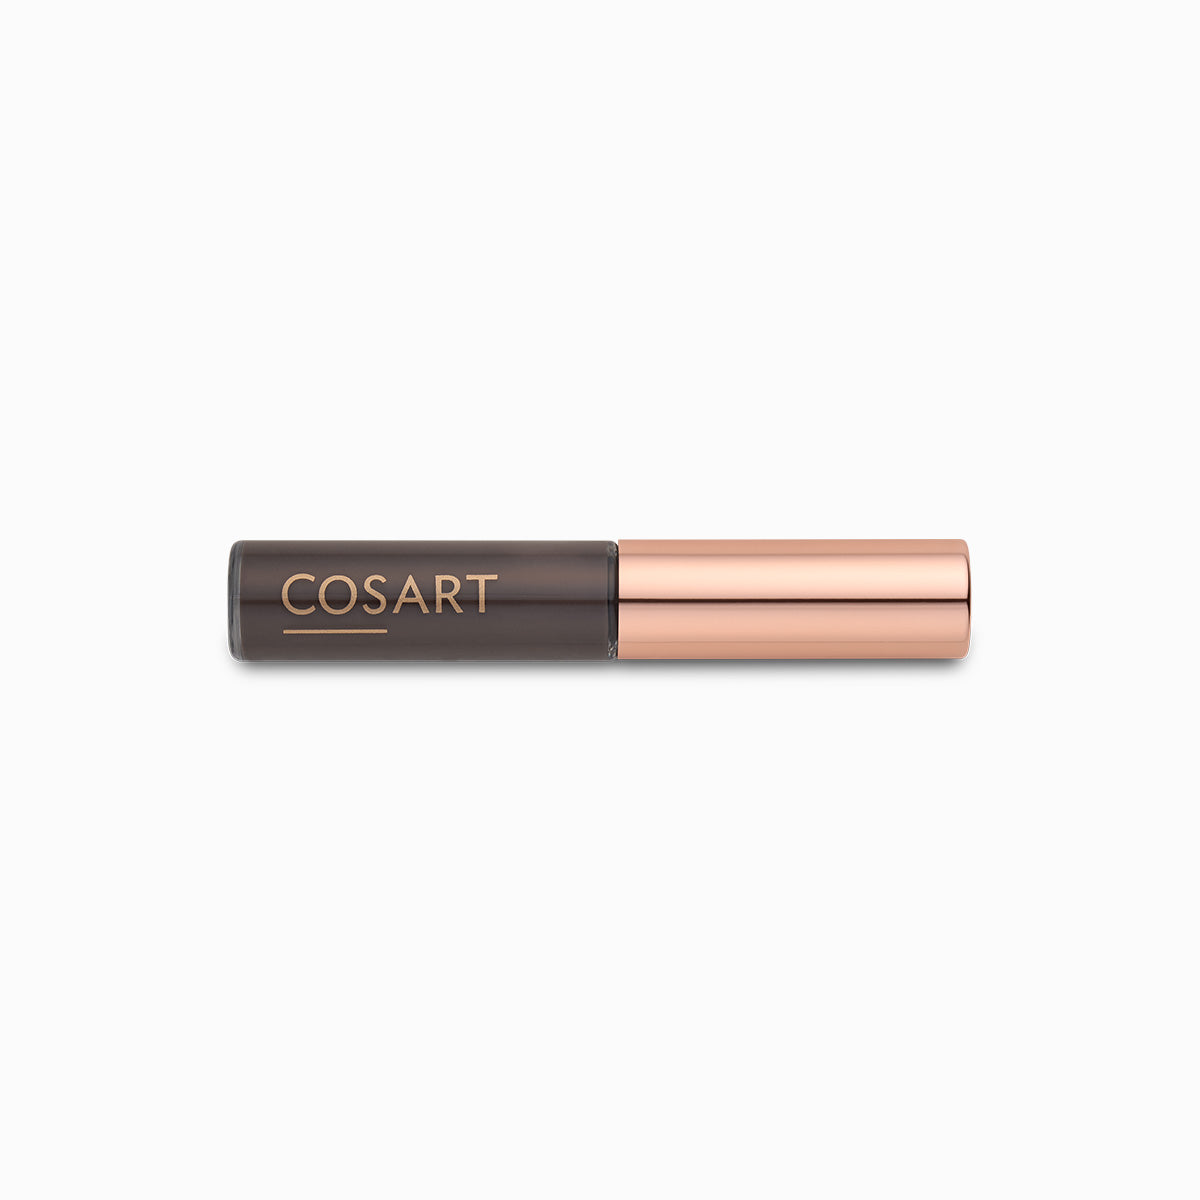 COSART | Eyebrow Brush